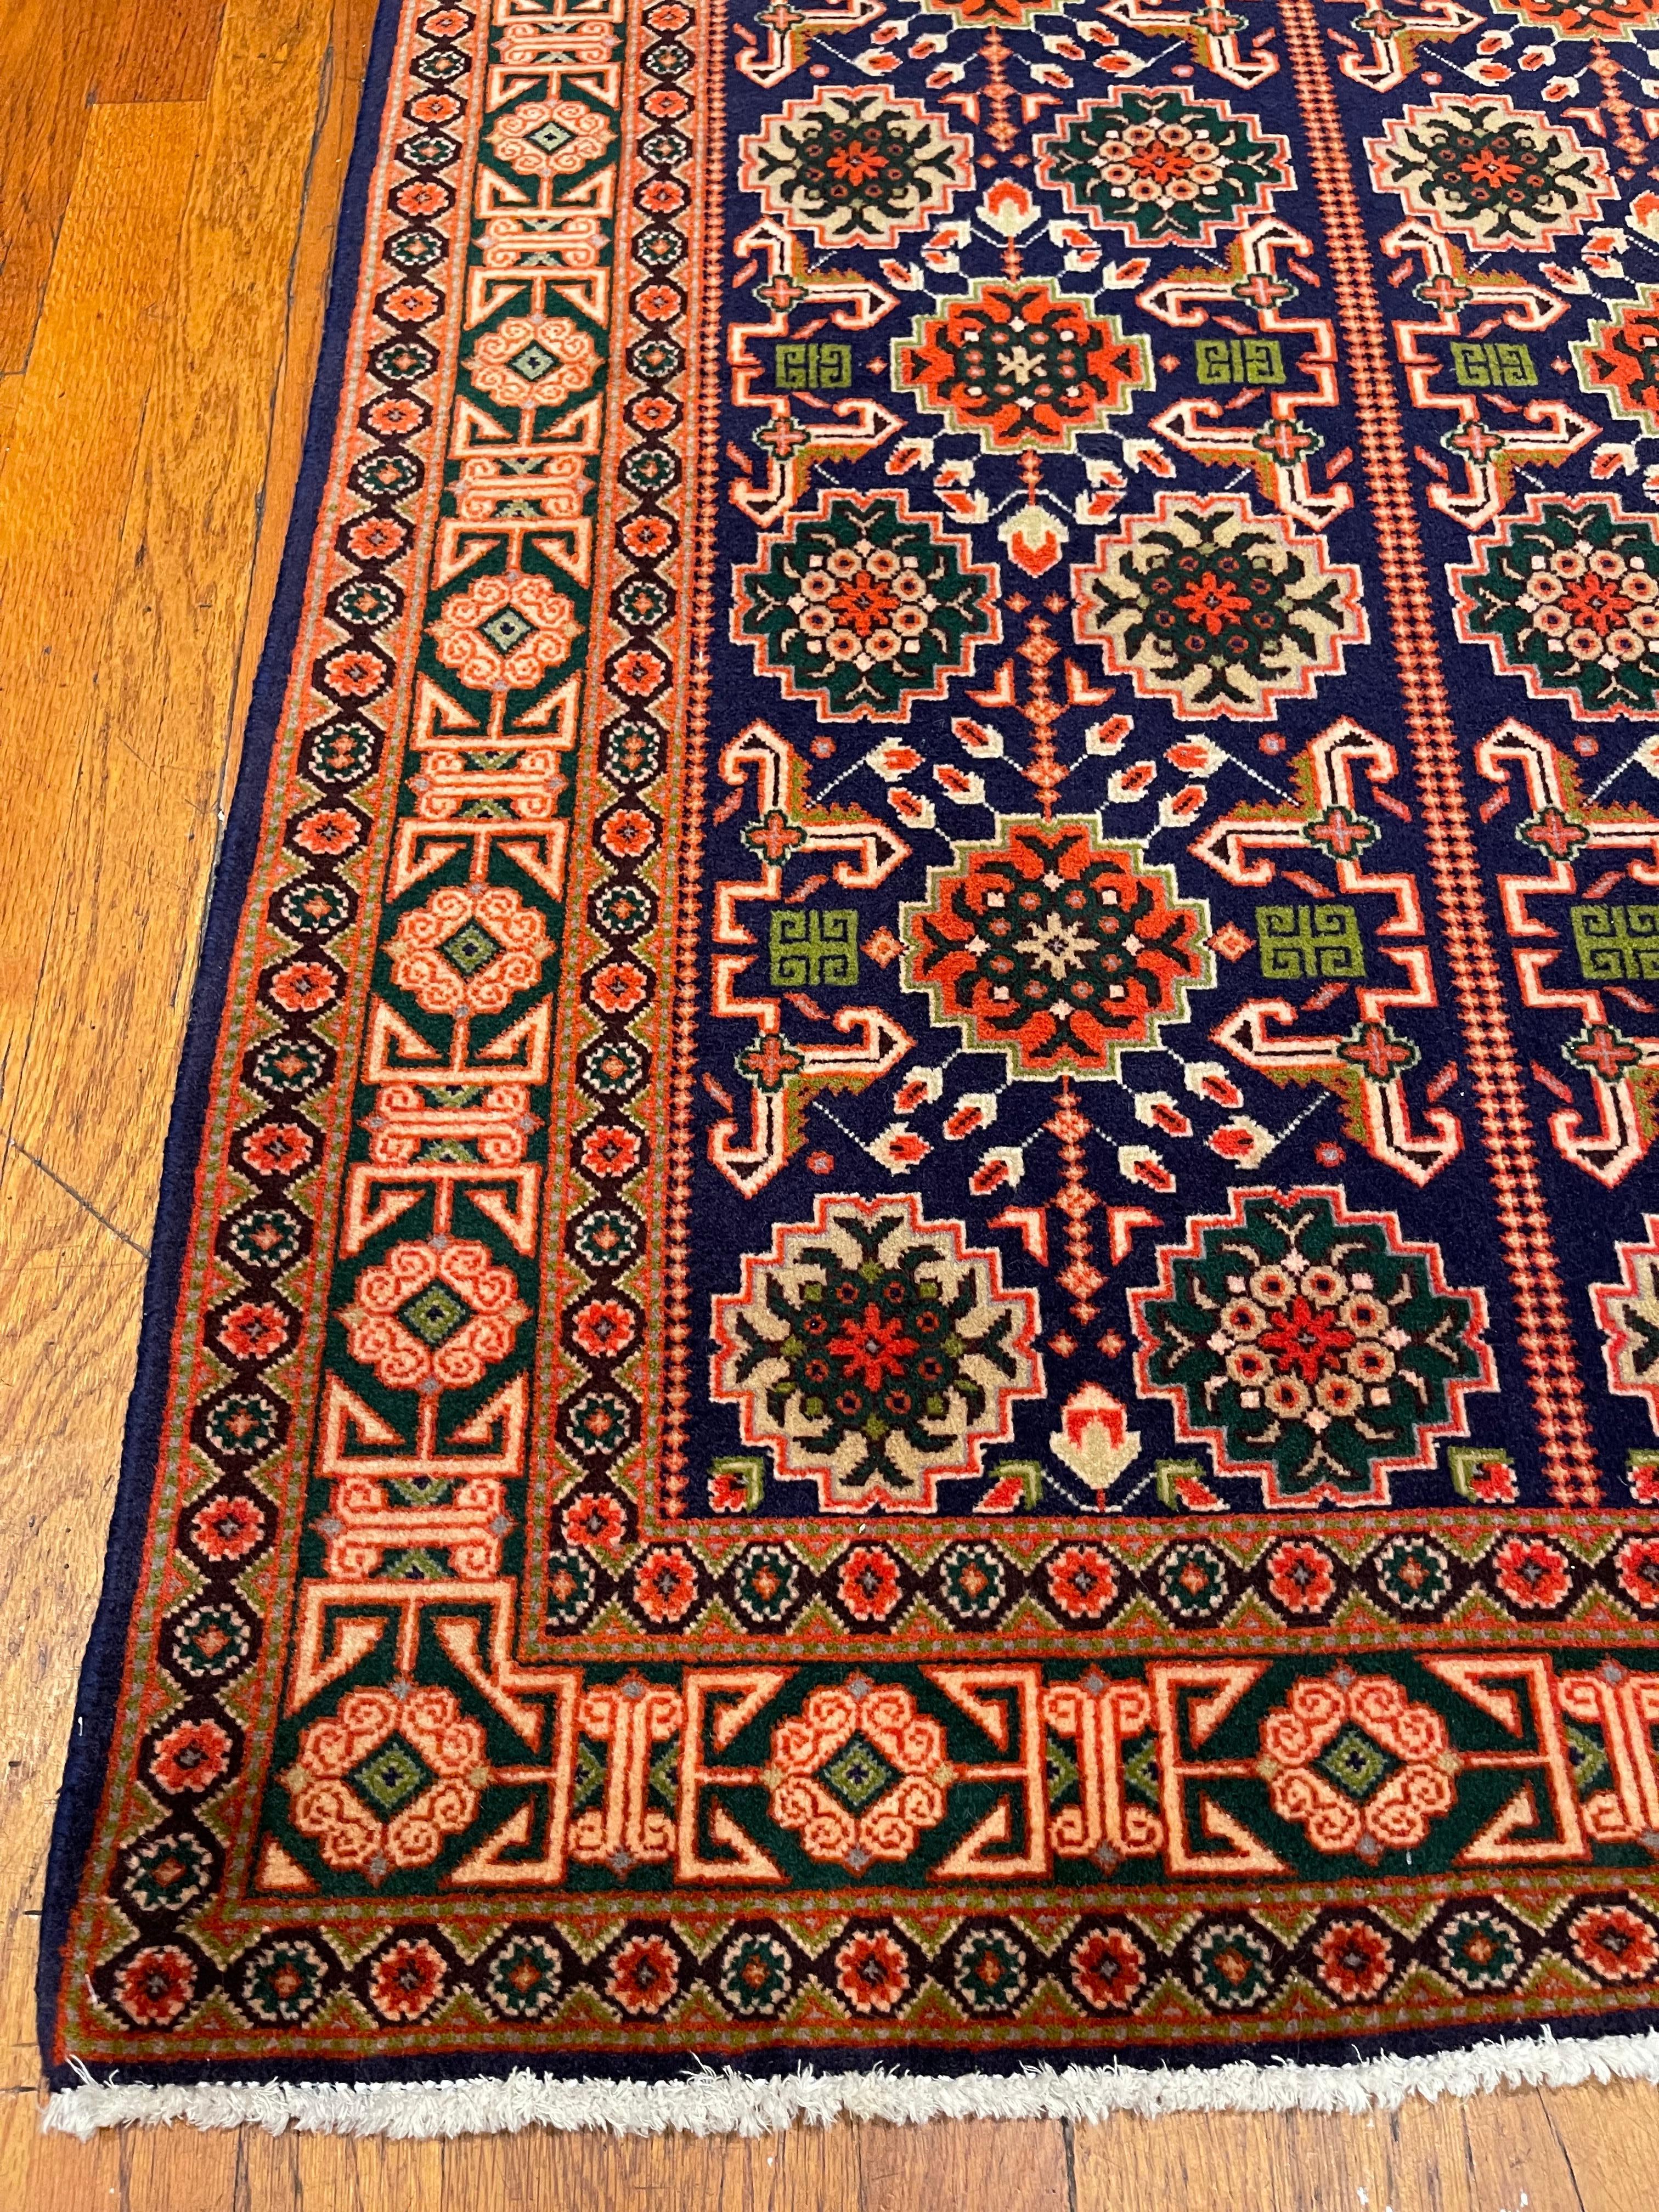 Wir präsentieren einen atemberaubenden, handgeknüpften persischen Täbriz-Teppich, der hochwertige Handwerkskunst und zeitlose Schönheit verkörpert. Mit seinem bezaubernden Allover-Muster, bekannt als Ghoba, besticht dieser Teppich durch seine